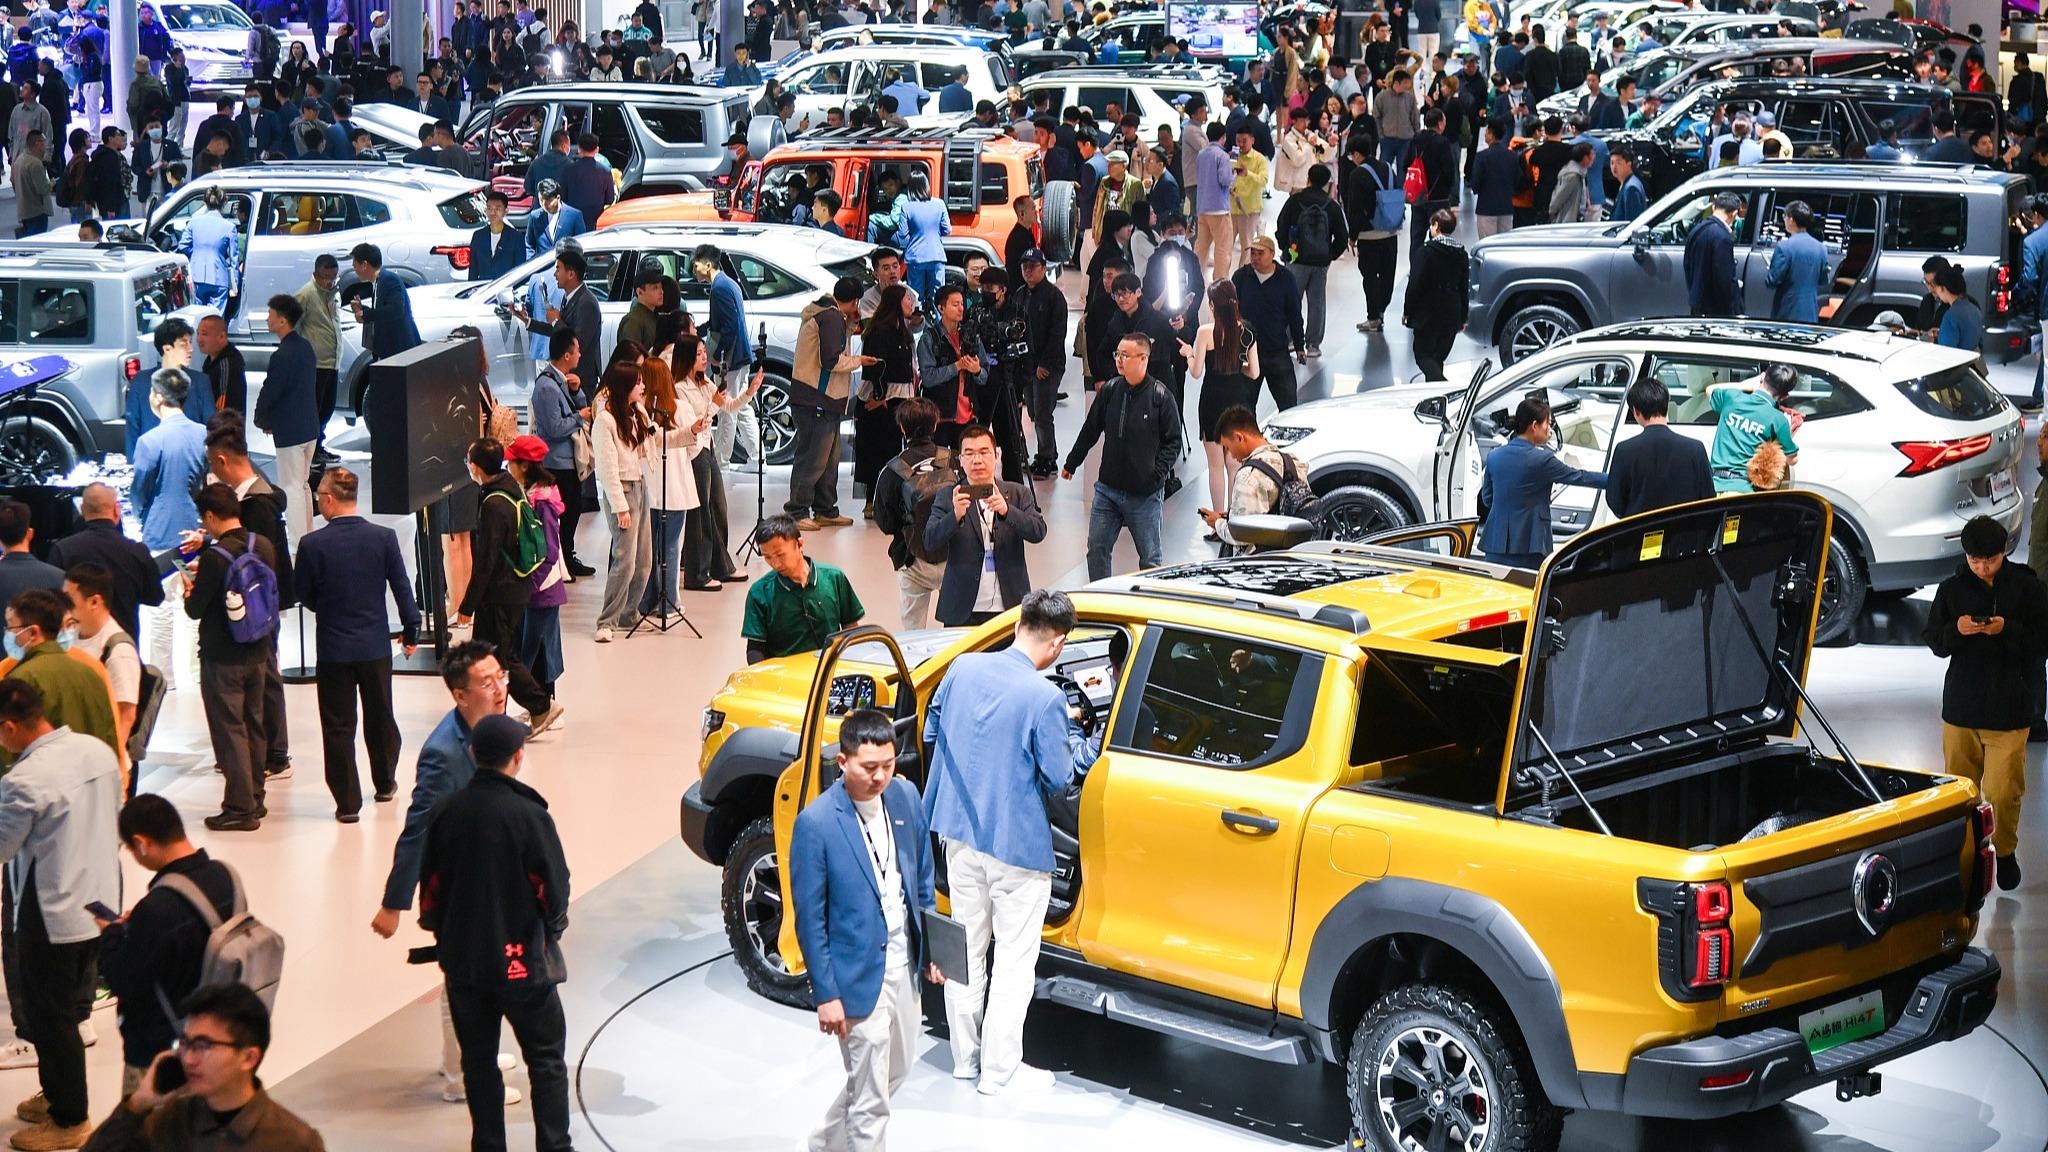 نمایشگاه خودروی پکن اعتماد جهانی به بازار خودروهای برقی چین را بیشتر کرد